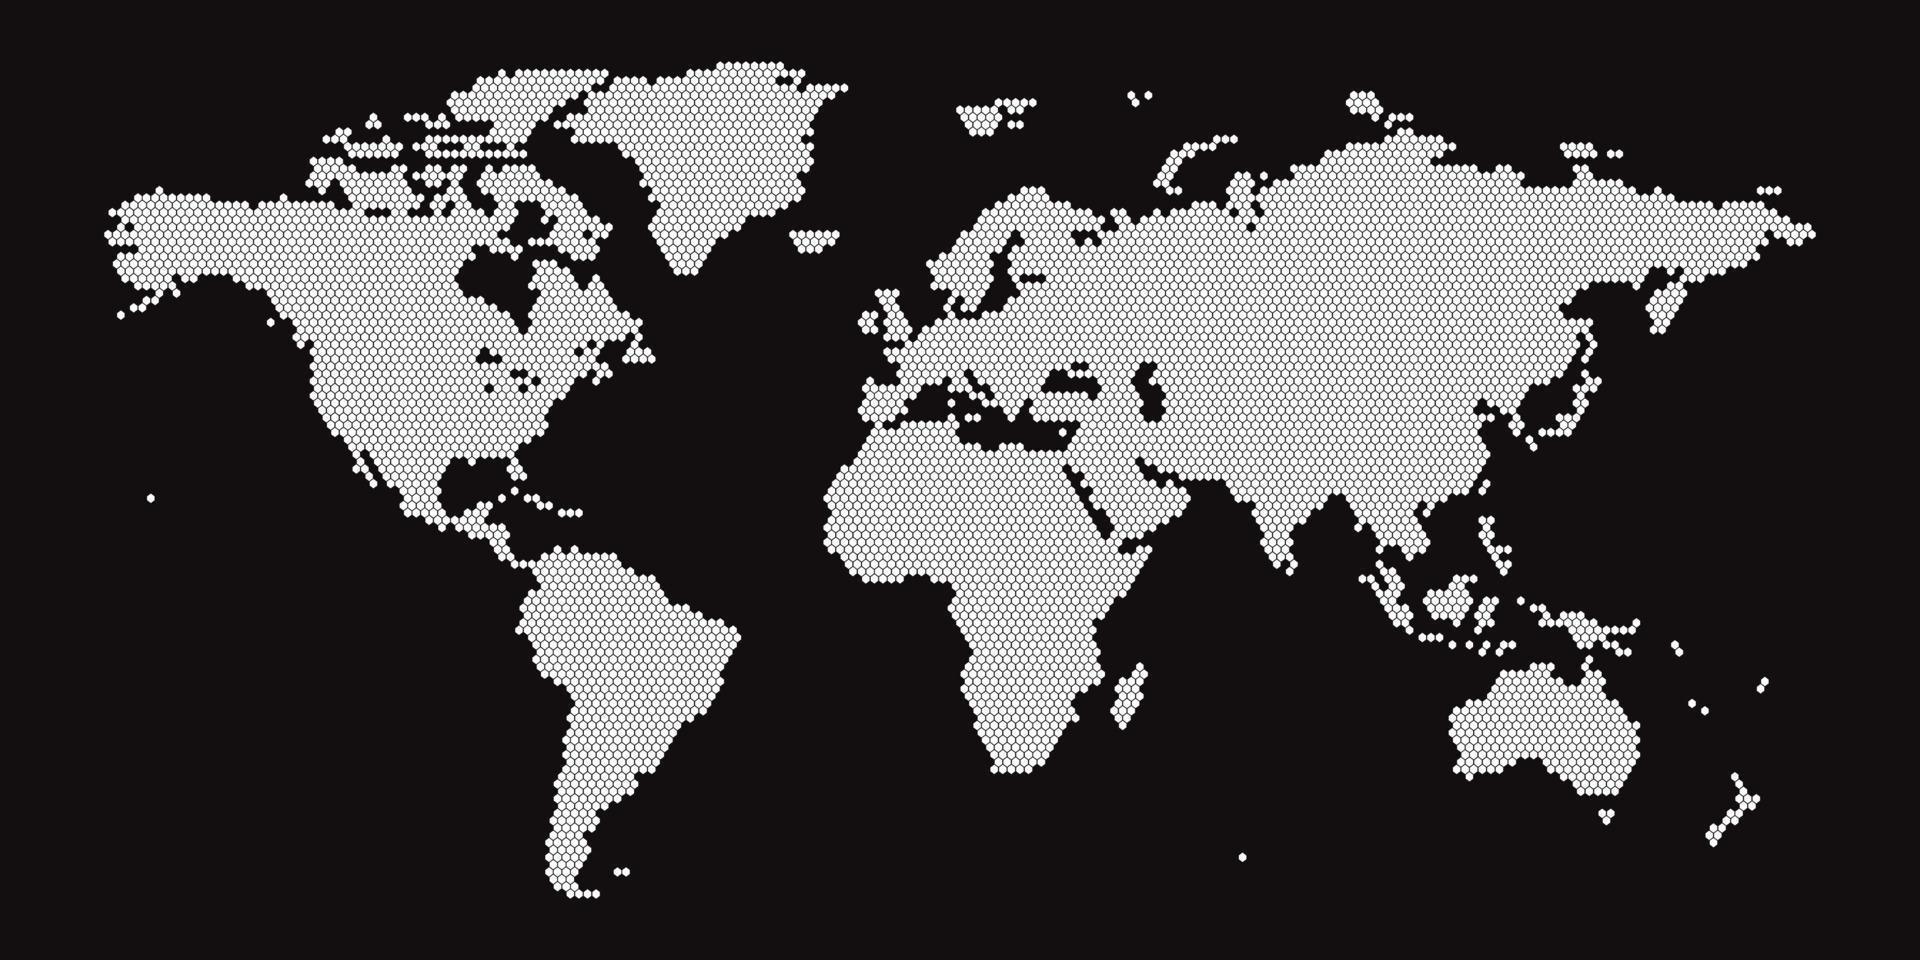 världskarta på svart bakgrund. världskartmall med kontinenter, nord- och sydamerika, europa och asien, afrika och australien vektor